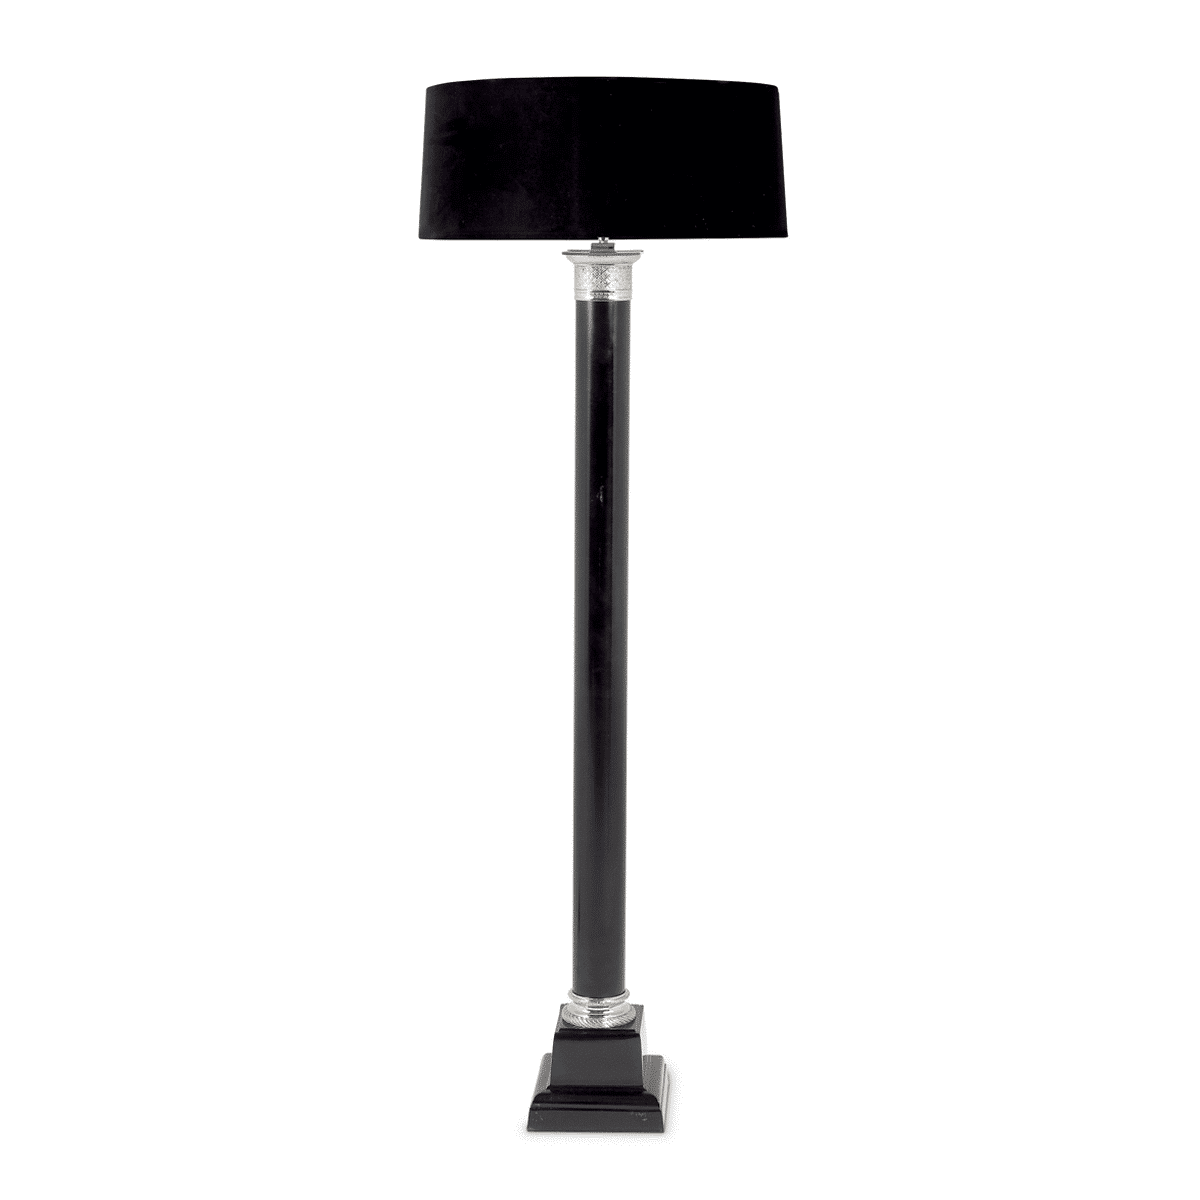 Morski Floor Lamp ☑️ Modern Sense Floor Lamps | Toronto, ON